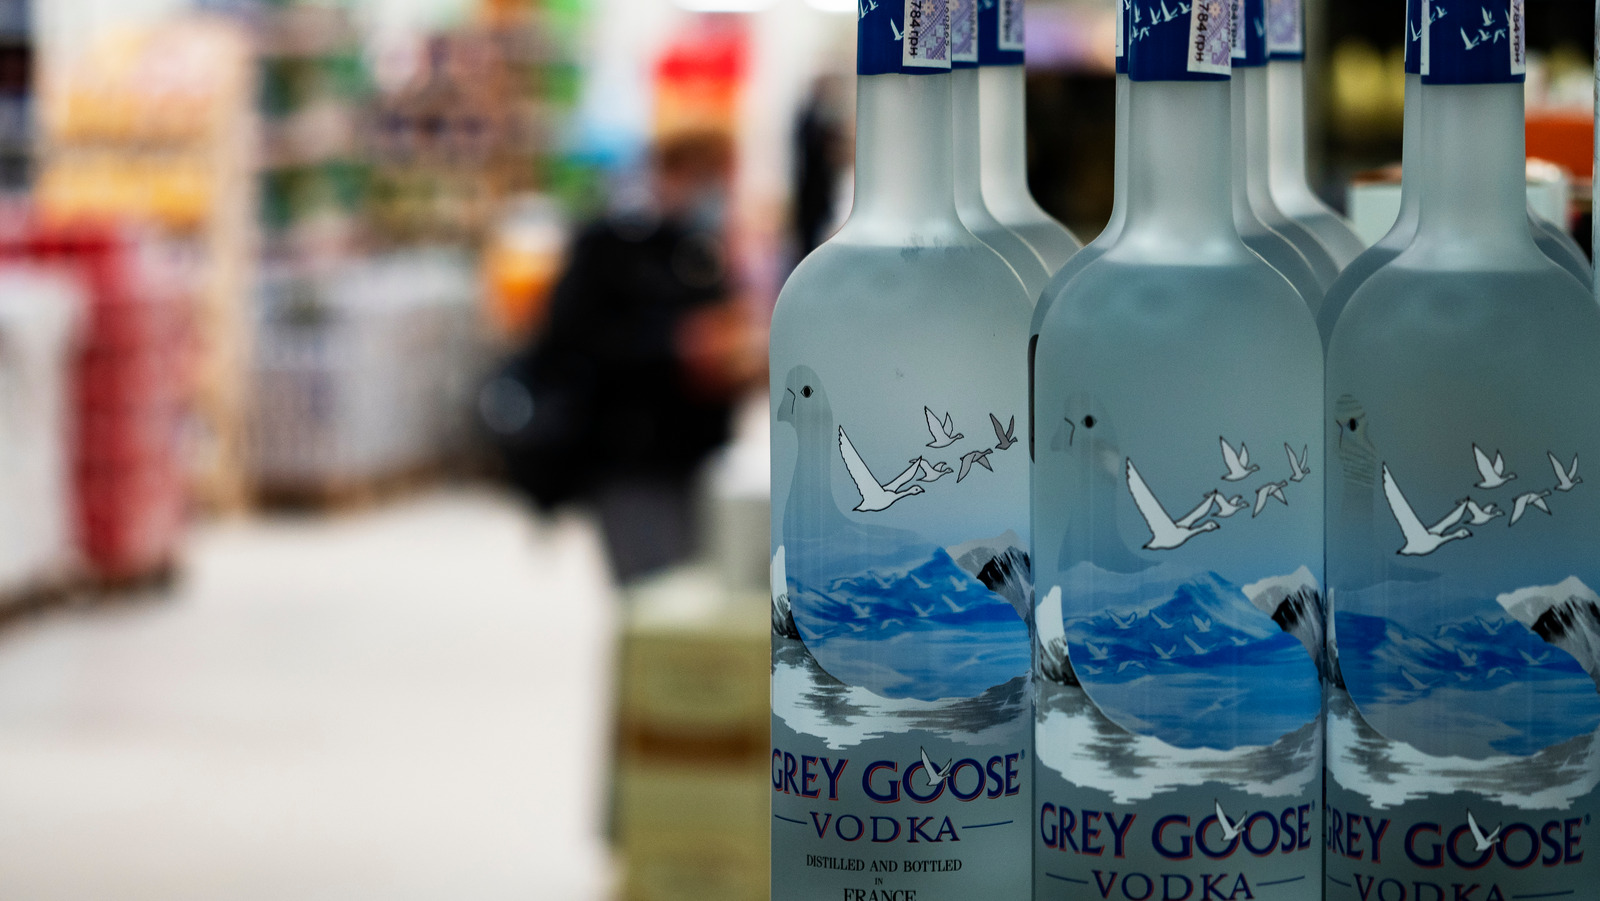 Grey Goose Vodka 1,0L (40% Vol.) with engraving - Grey Goose - Vodka